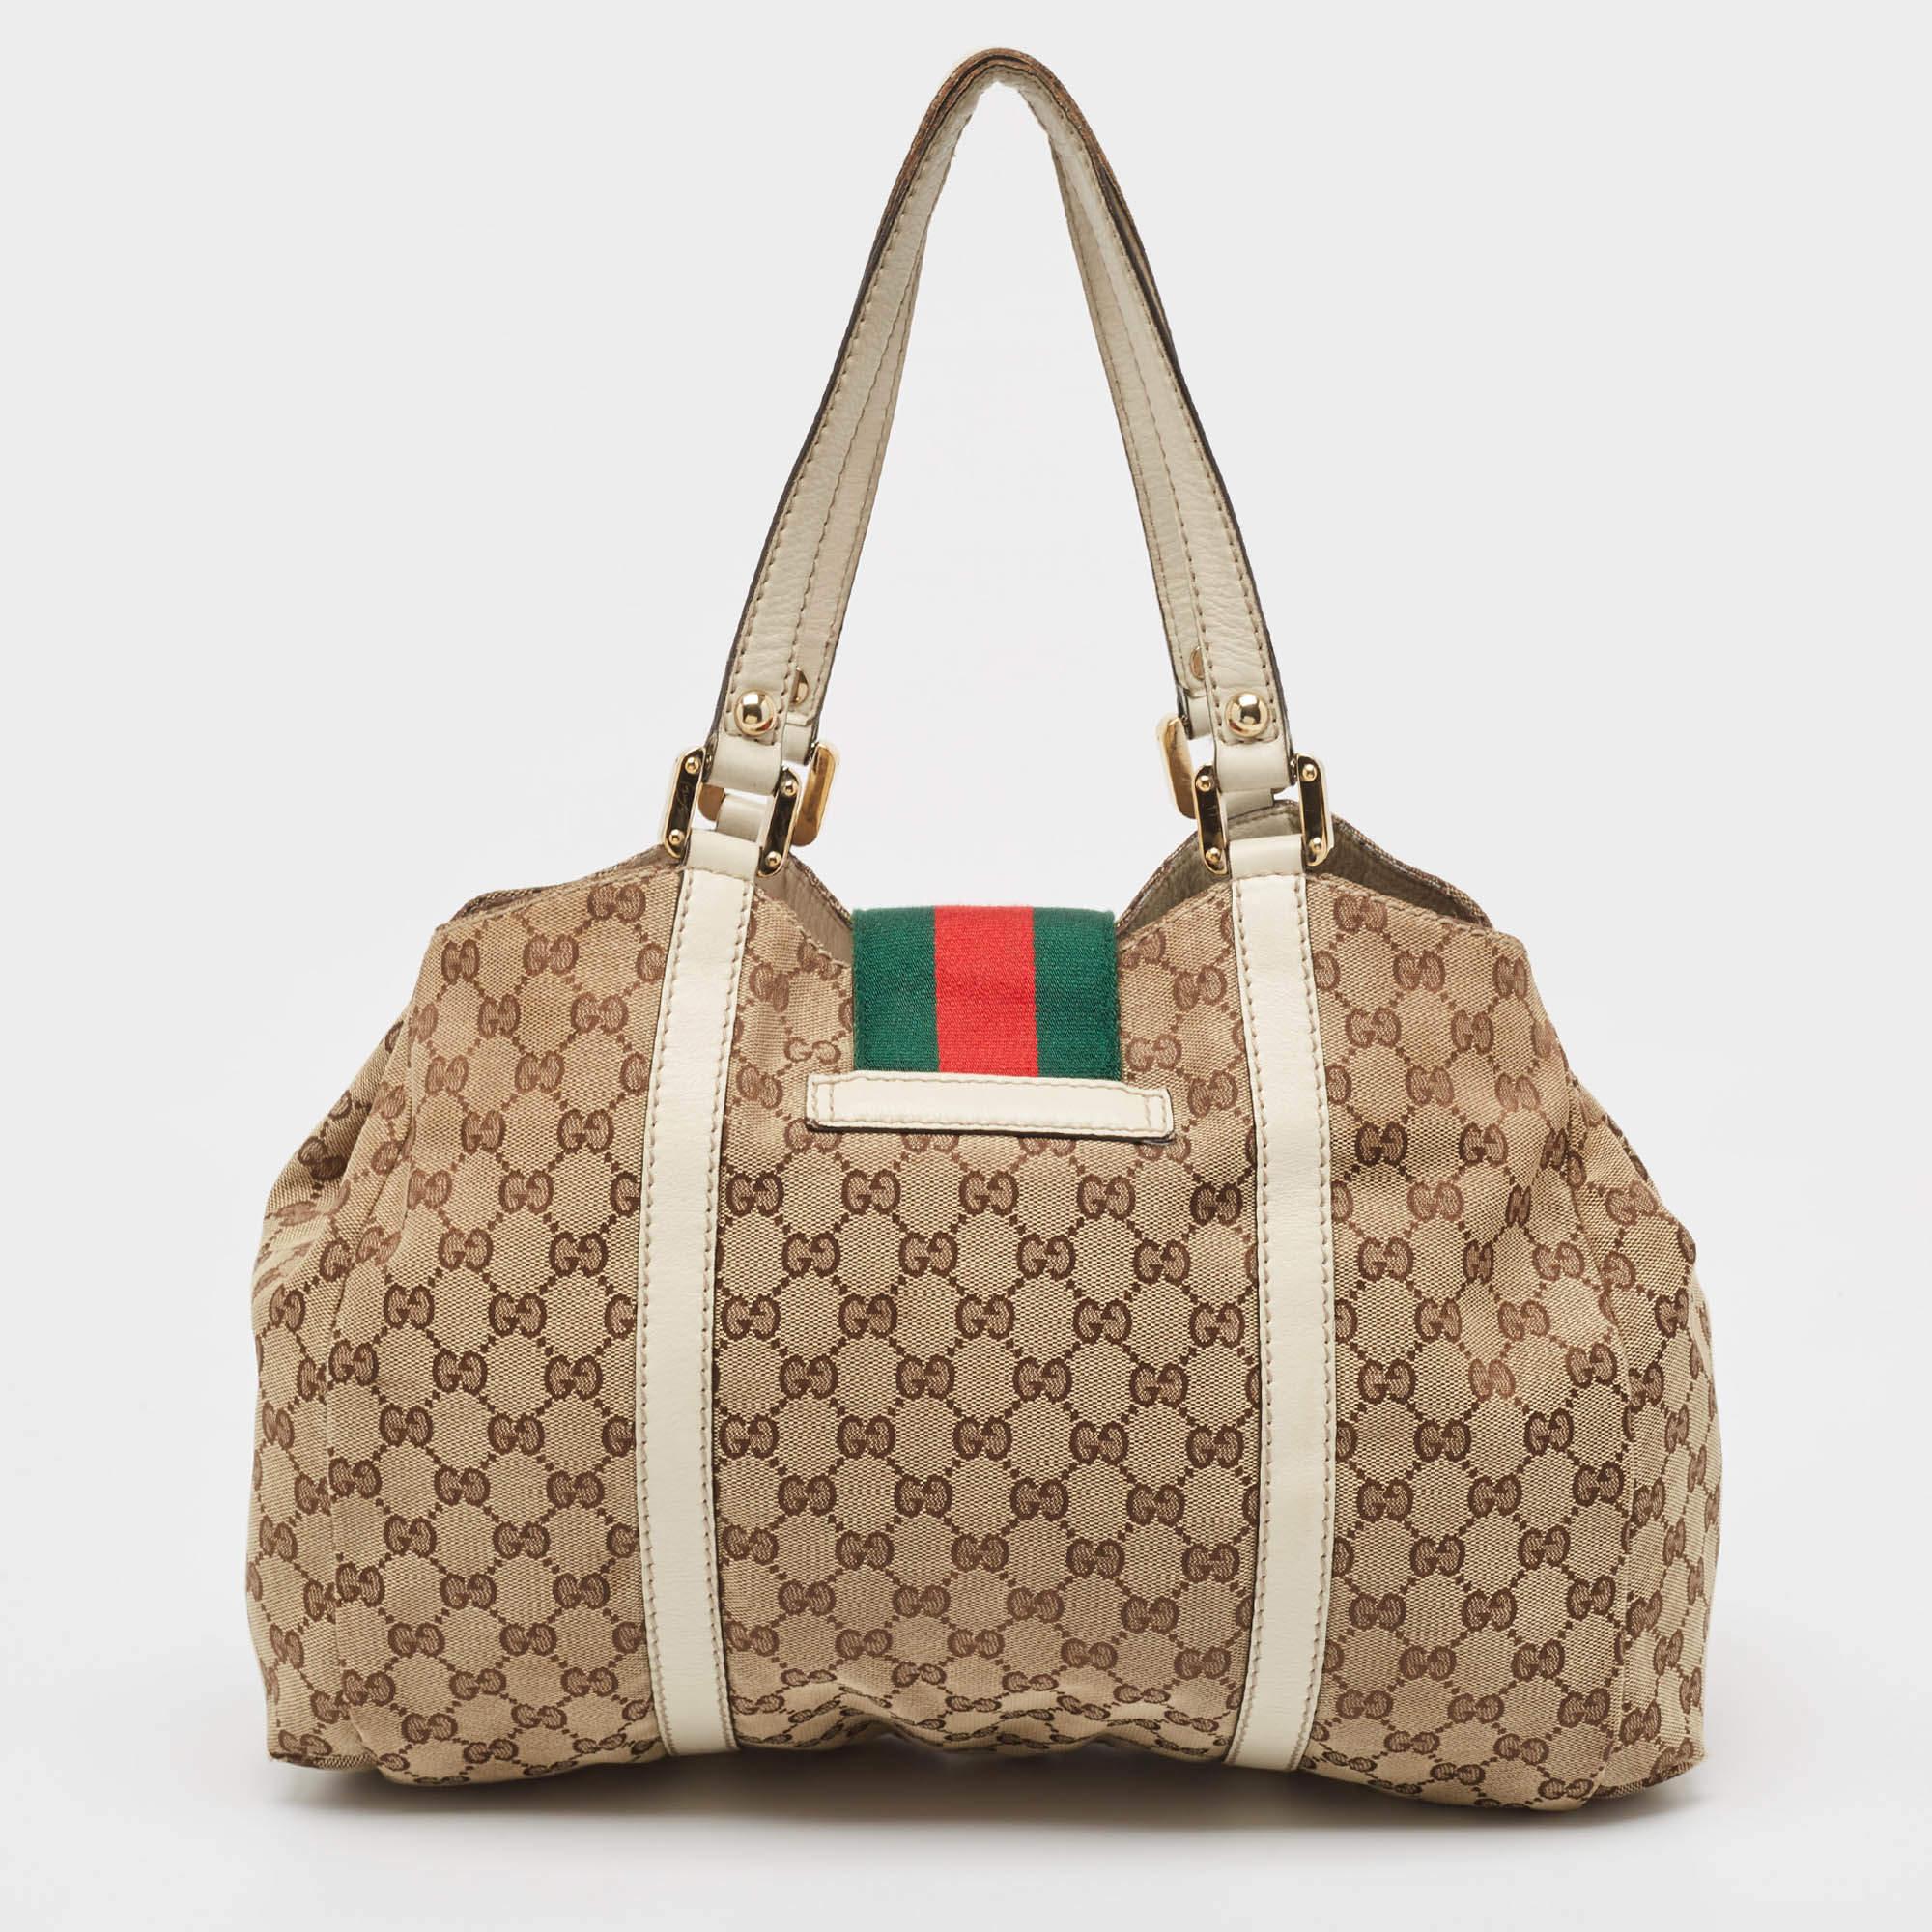 Des détails bien pensés, une qualité supérieure et une commodité quotidienne caractérisent ce sac de créateur pour femmes de Gucci. Le sac est cousu avec talent pour offrir un look raffiné et une finition impeccable.

